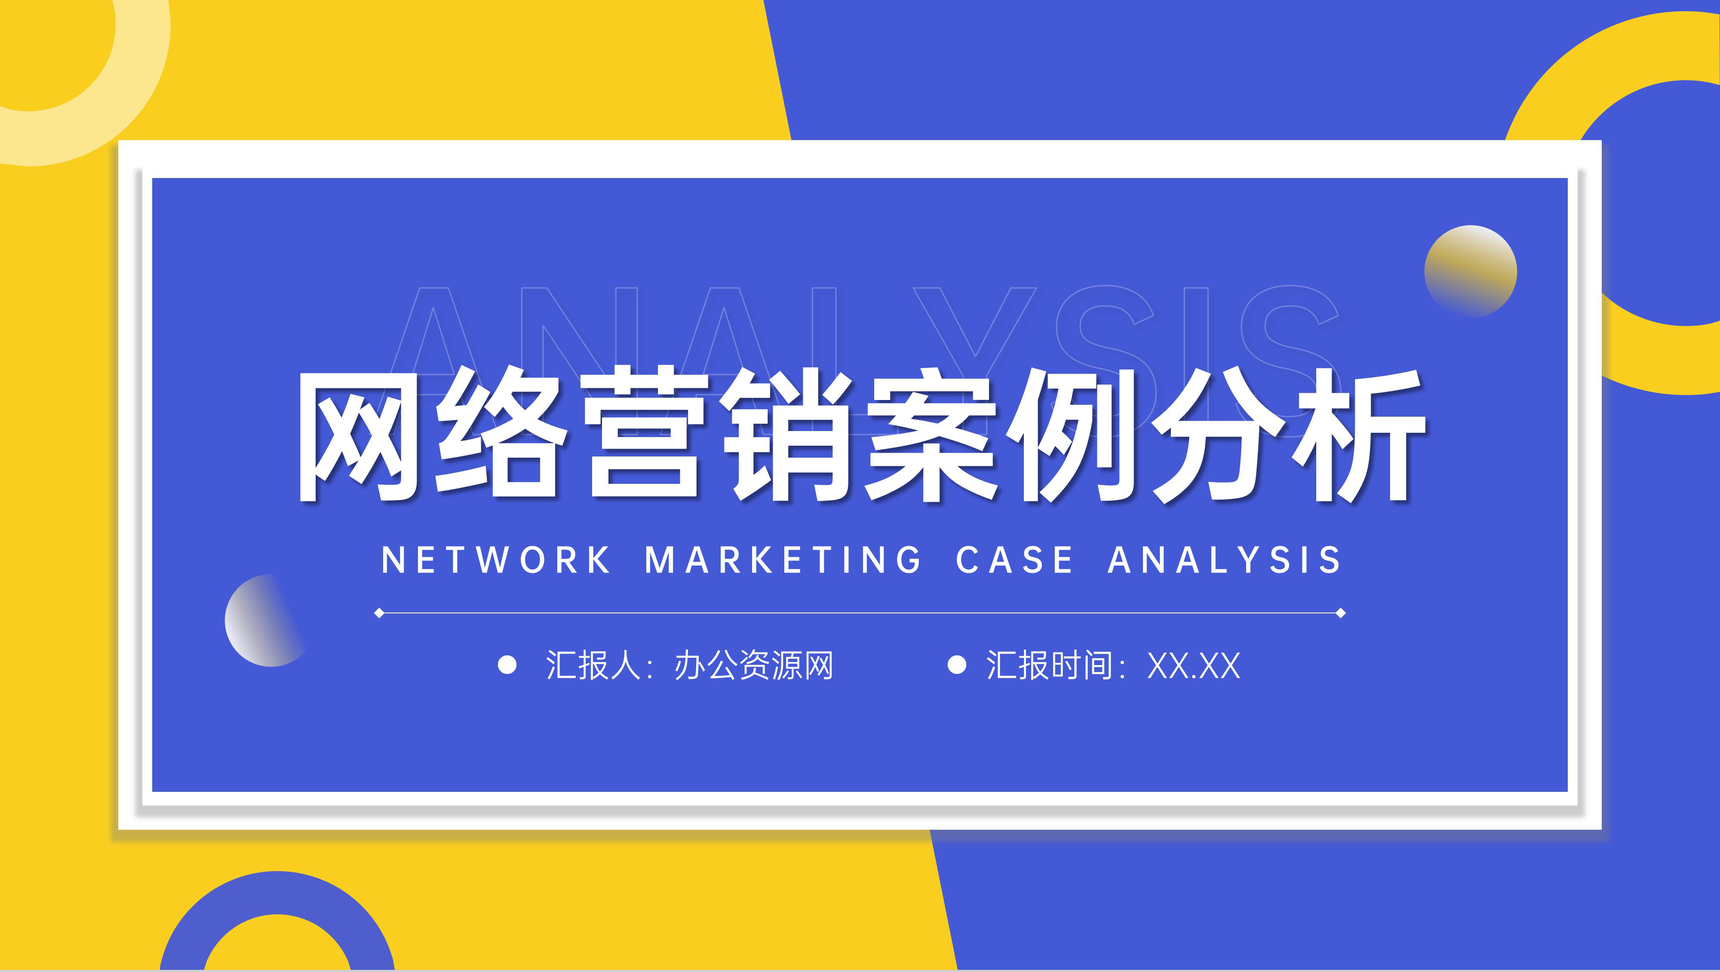 蓝黄撞色网络营销案例分析品牌招商宣讲PPT模板-1